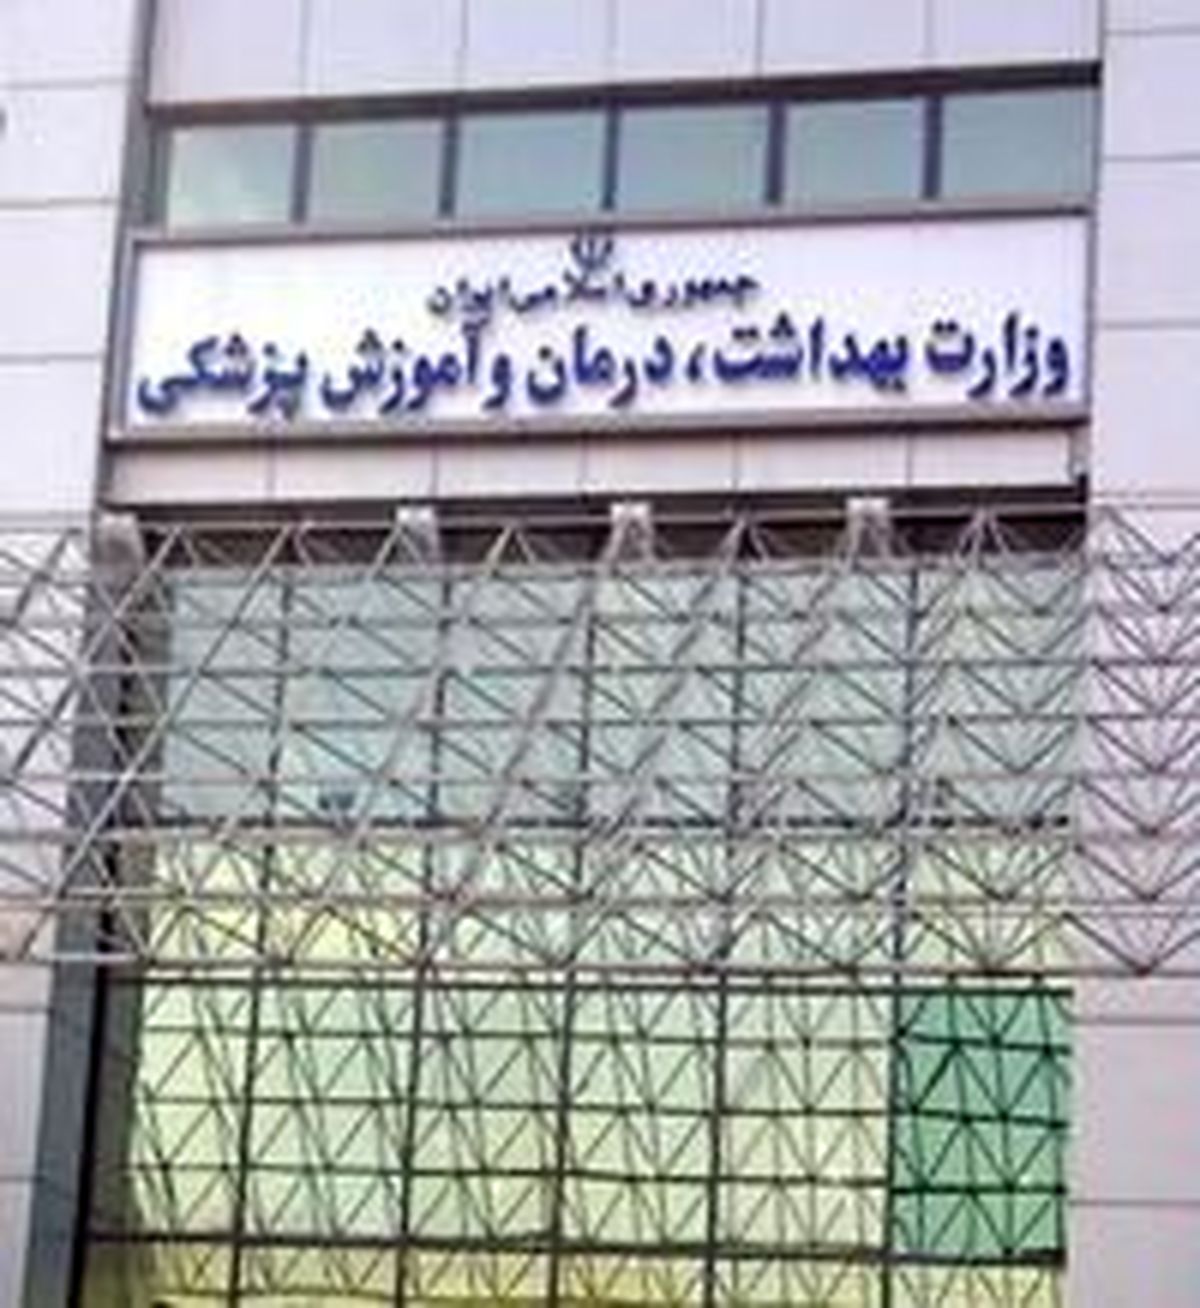 "سازمان بیمه سلامت" در اختیار وزارت بهداشت